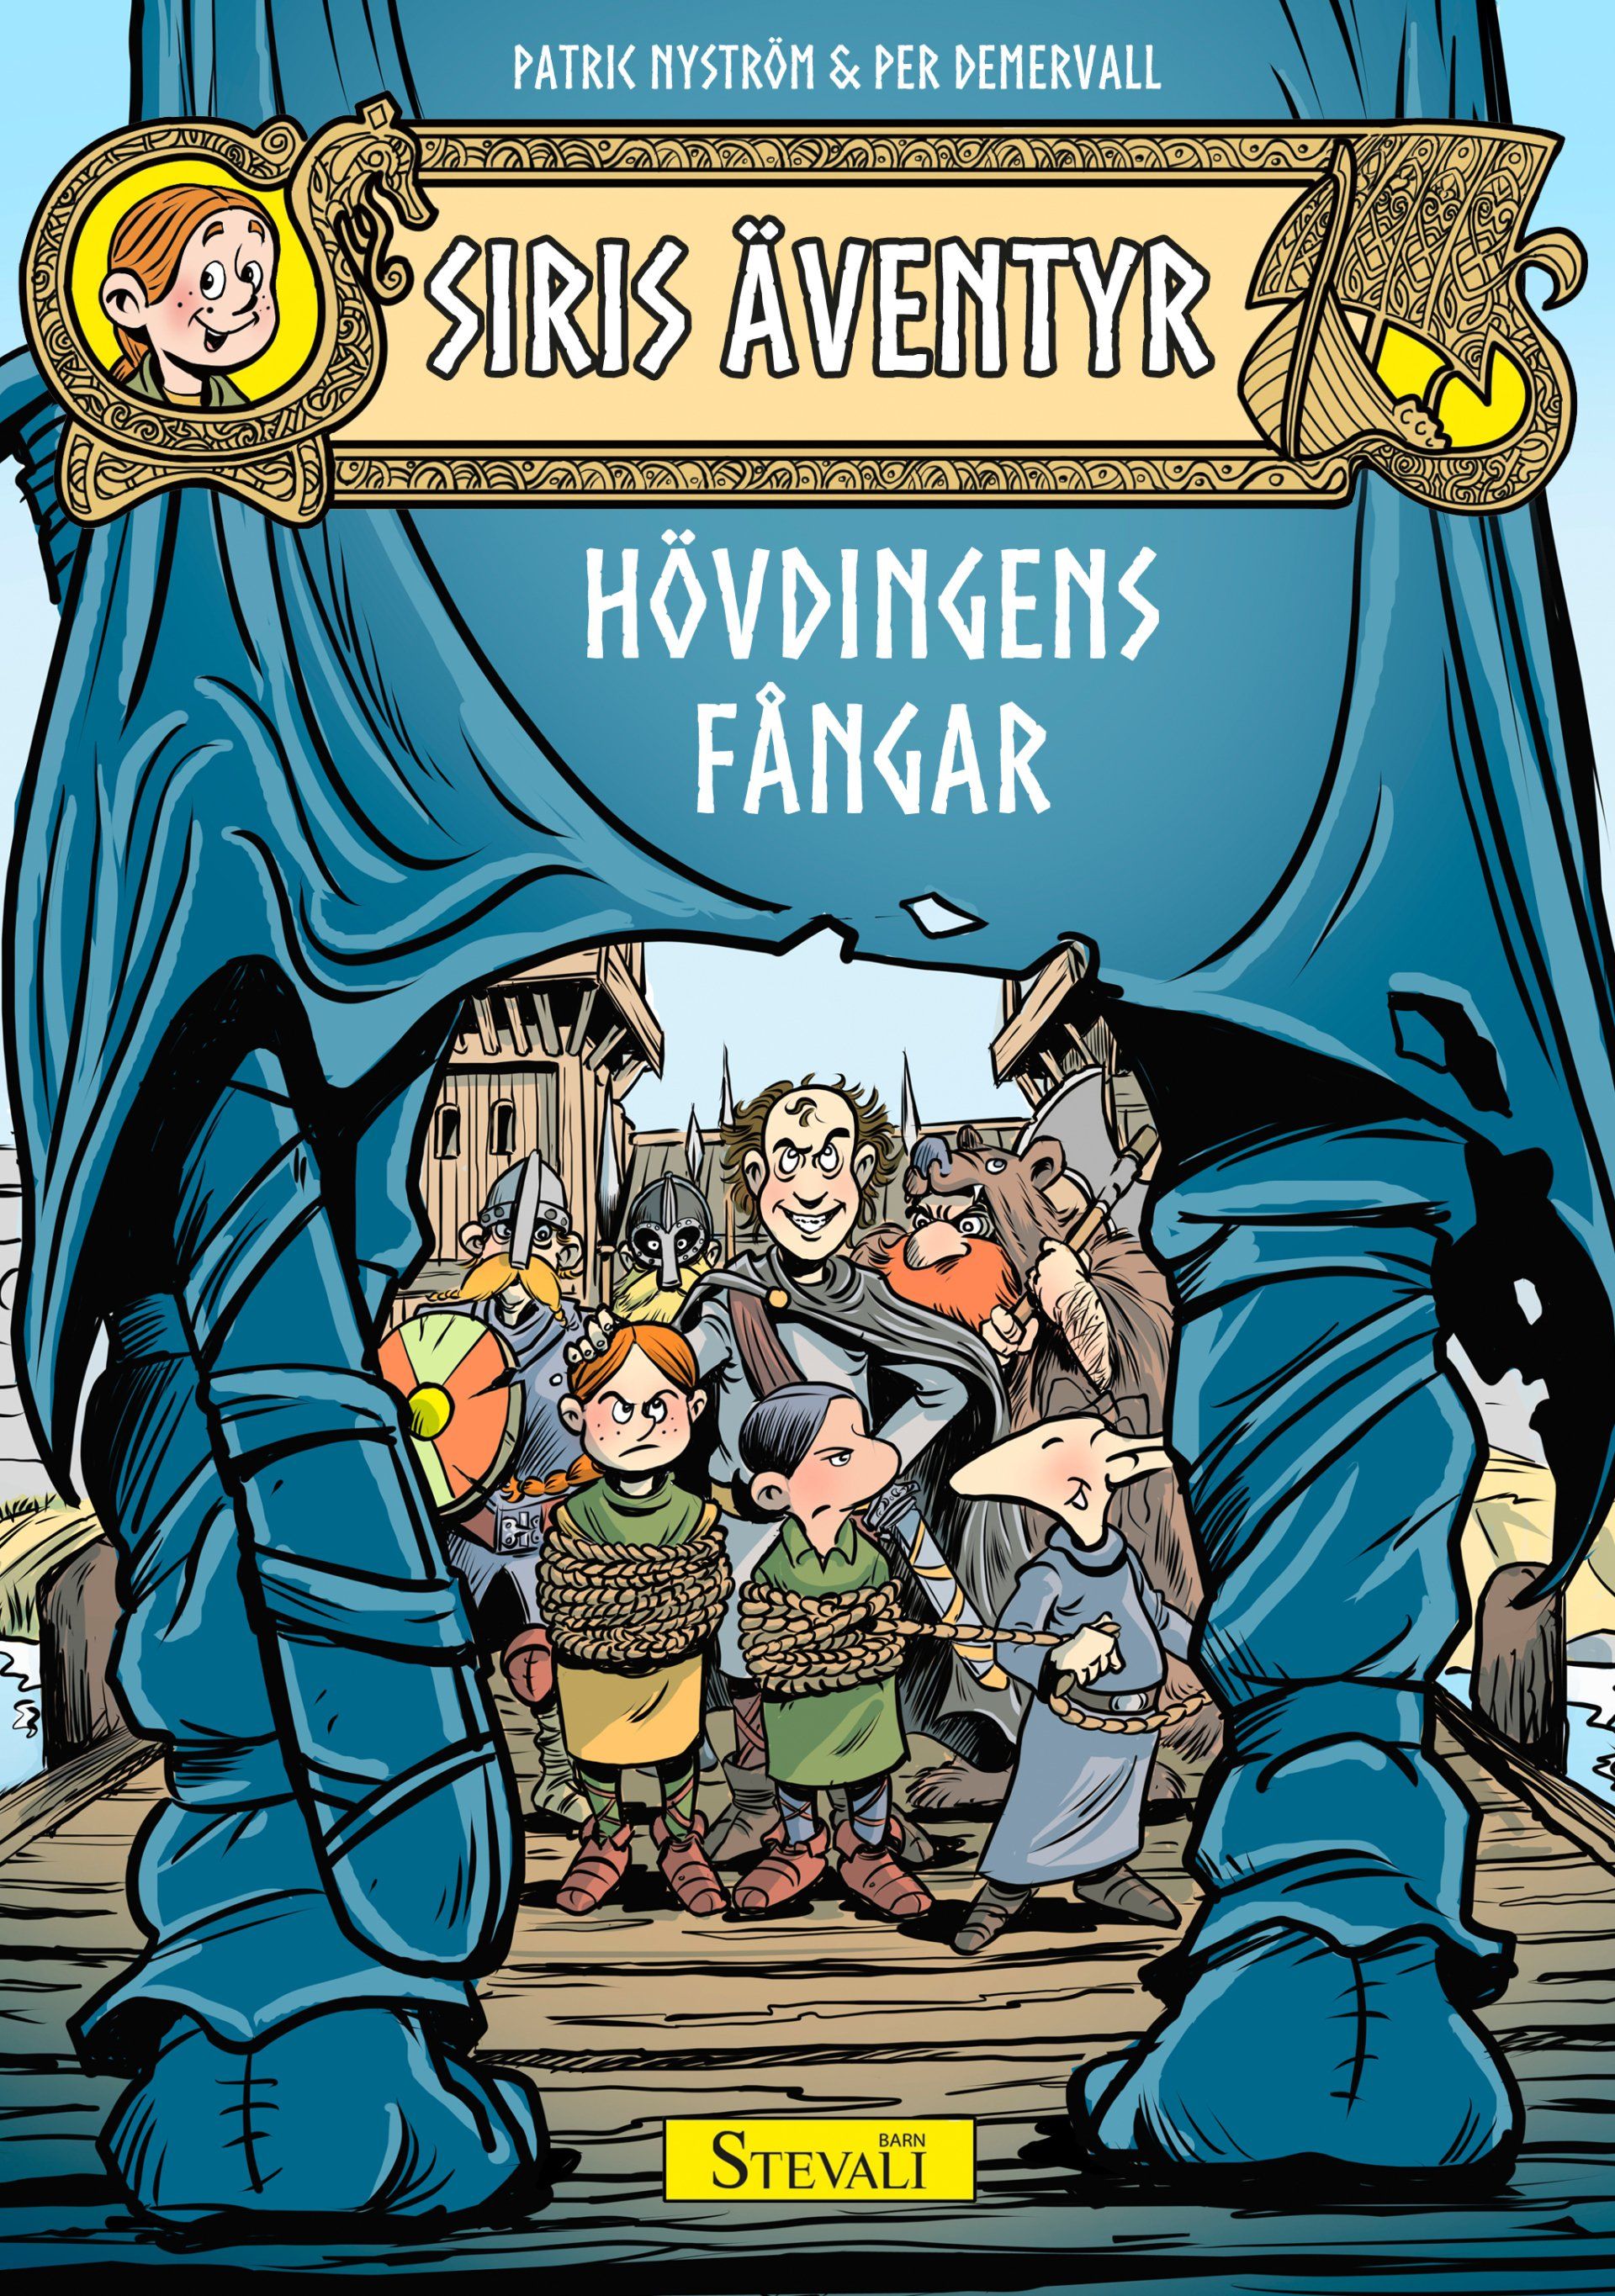 Boken Siris äventyr: Hövdingens fångar är skriven av Patric Nyström och illustrerad av Per Demervall på Stevali Bokförlag.